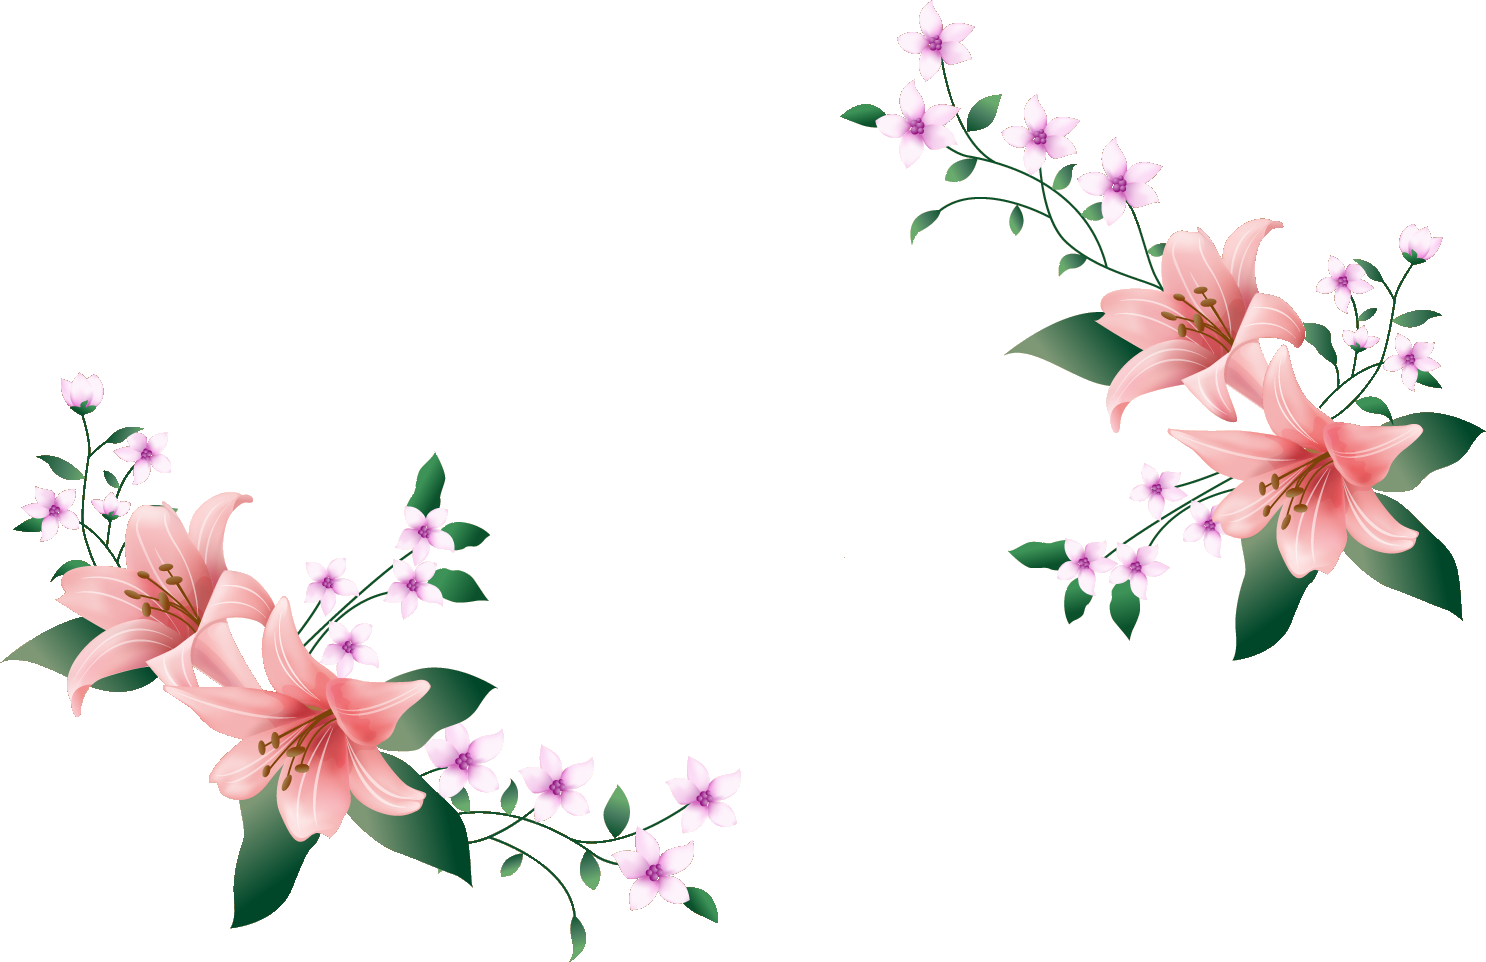 リアルな花のイラスト フリー素材 フレーム枠no 12 ピンクのユリ